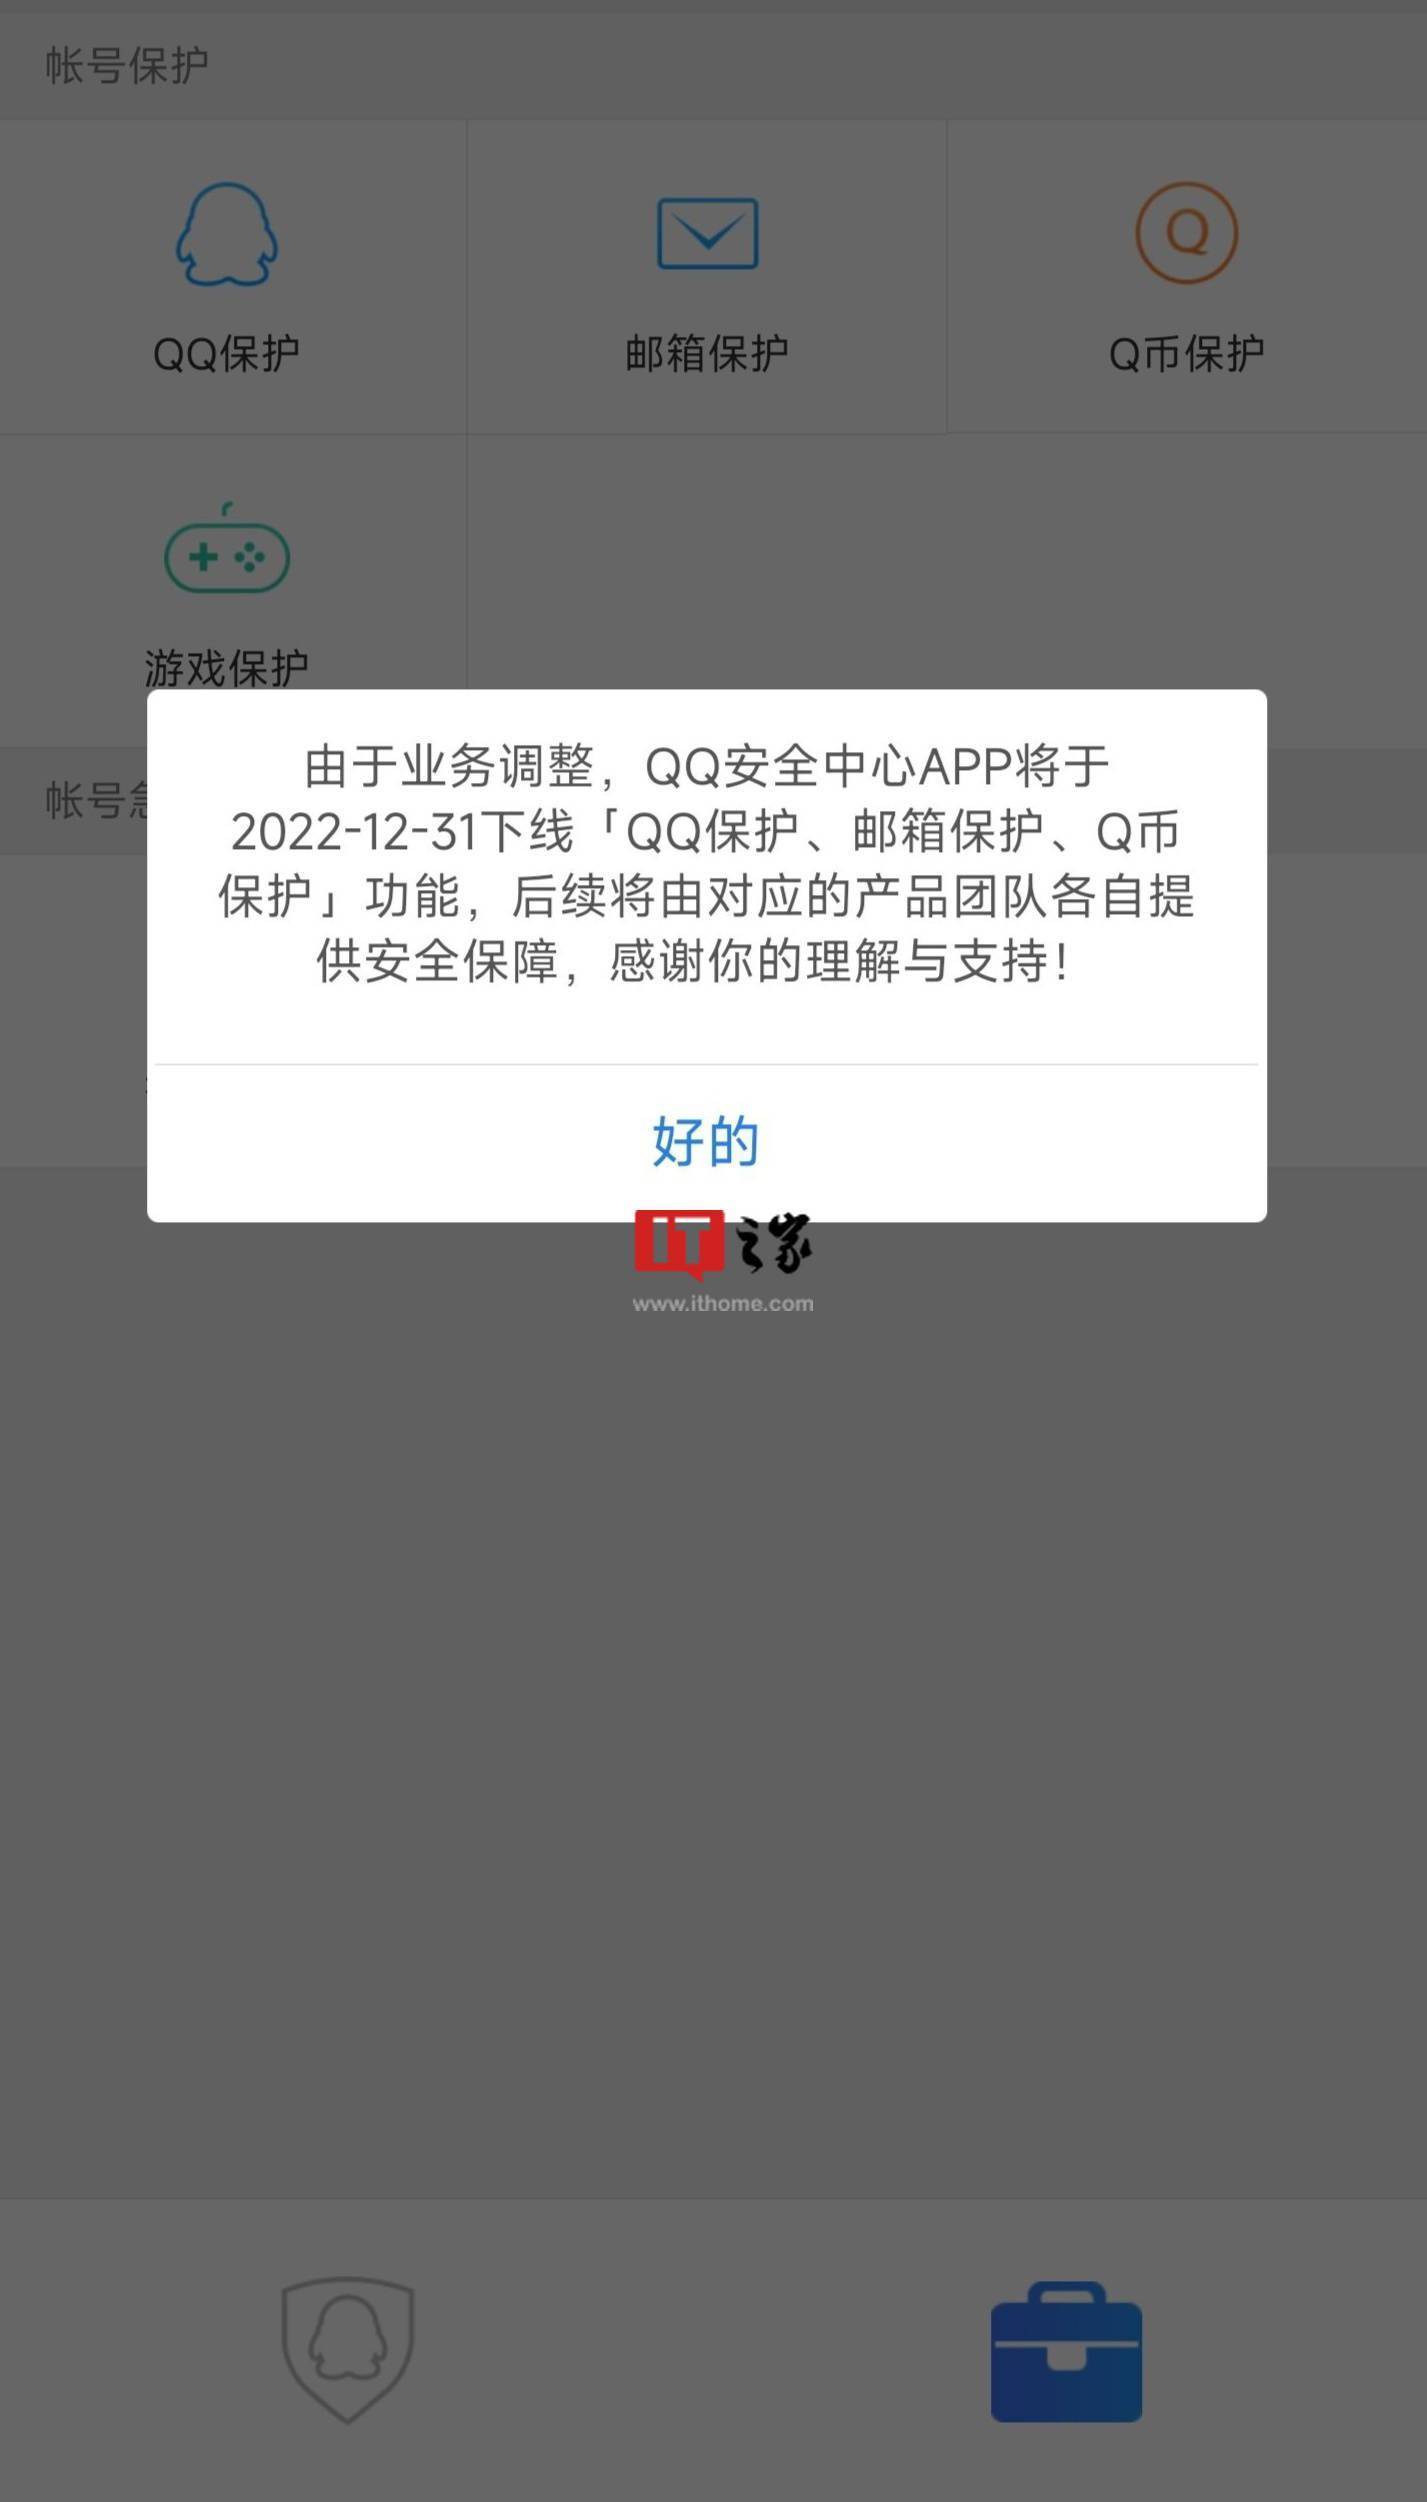 华为帐号手机登录中心
:QQ 安全中心 App将下线三个保护功能